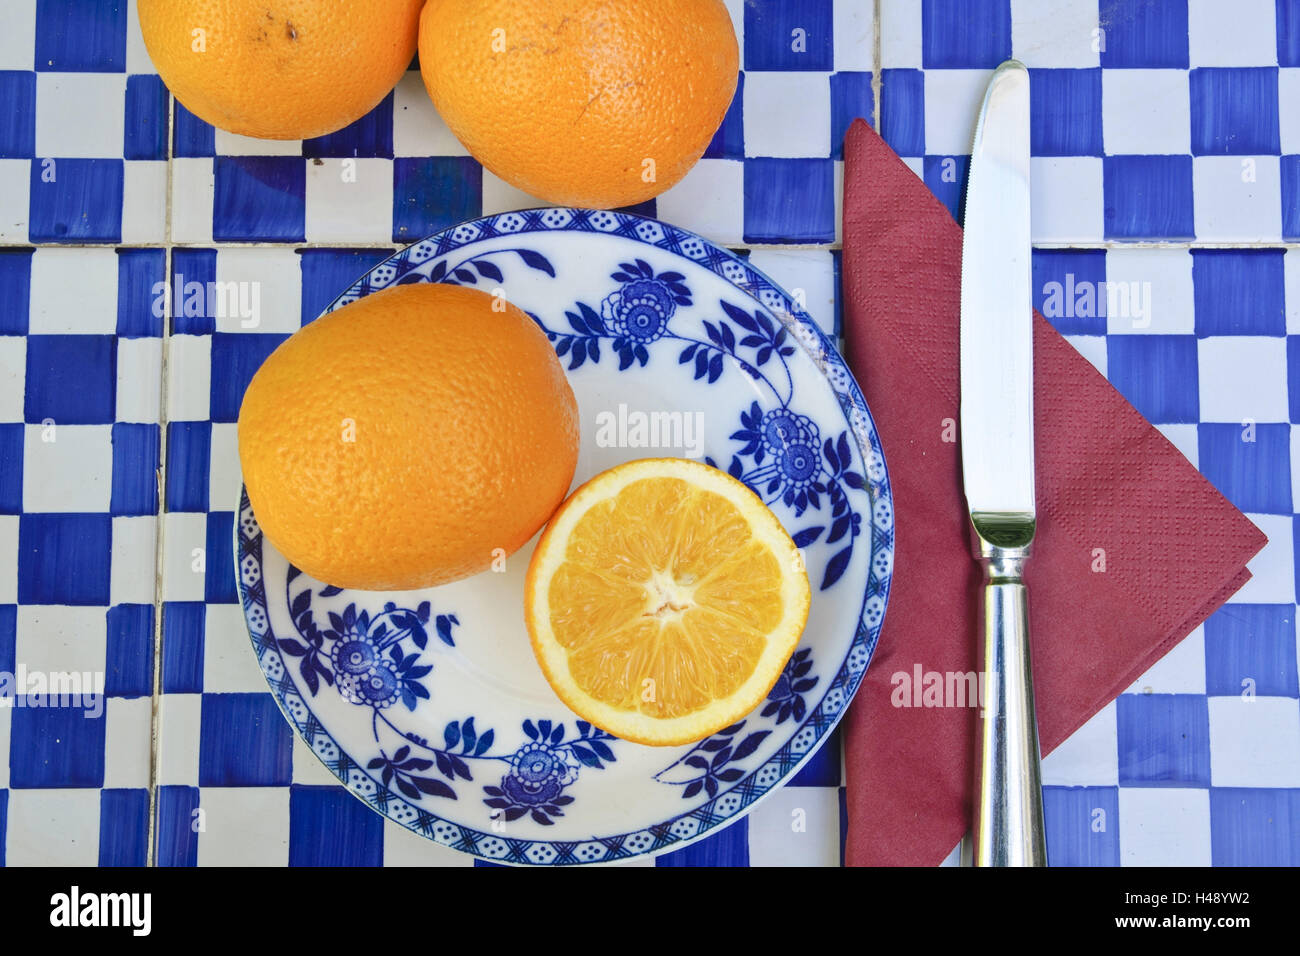 Les oranges sur la plaque, de l'alimentation, Majorque, Espagne, Banque D'Images